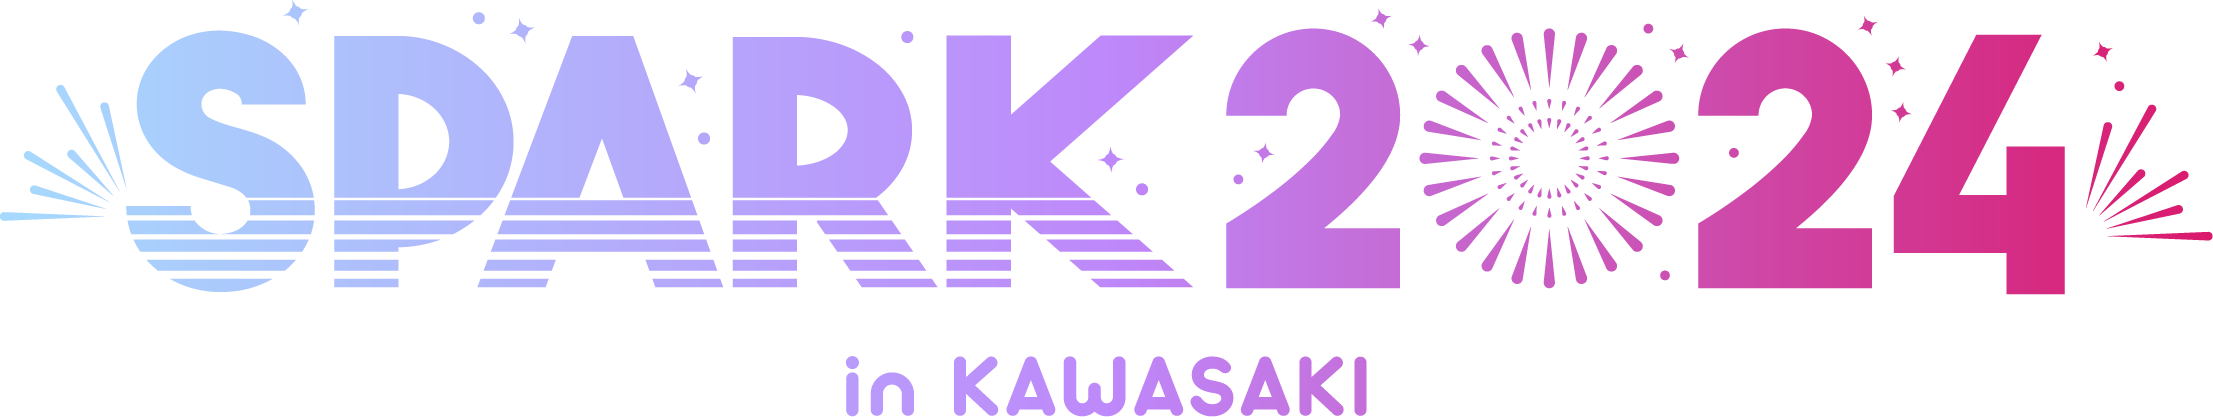 SPARK 2024 in KAWASAKI